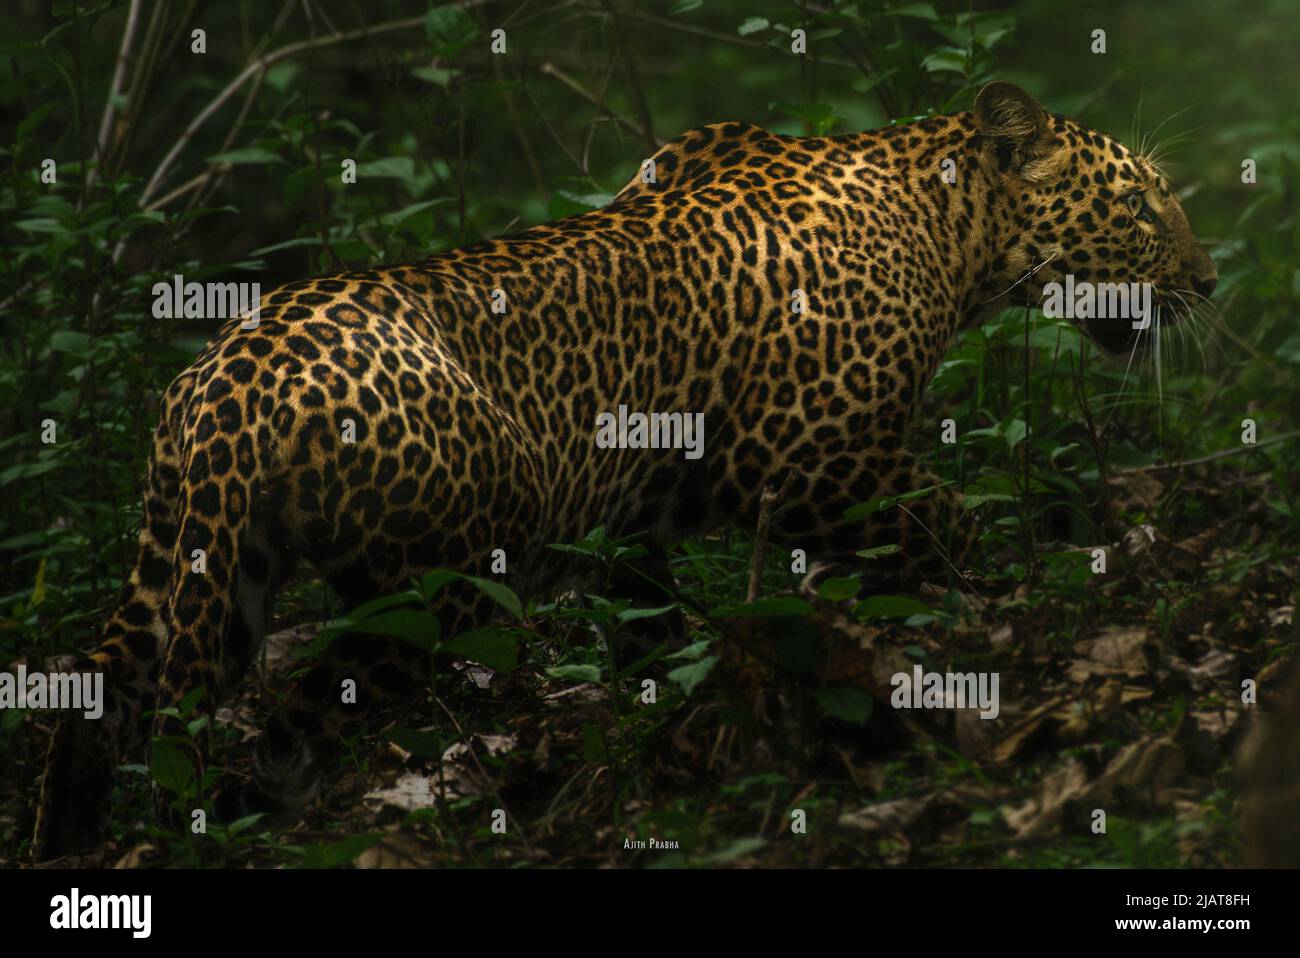 Asian leopard (Panthera pardus) from Kabini National park, India Stock Photo